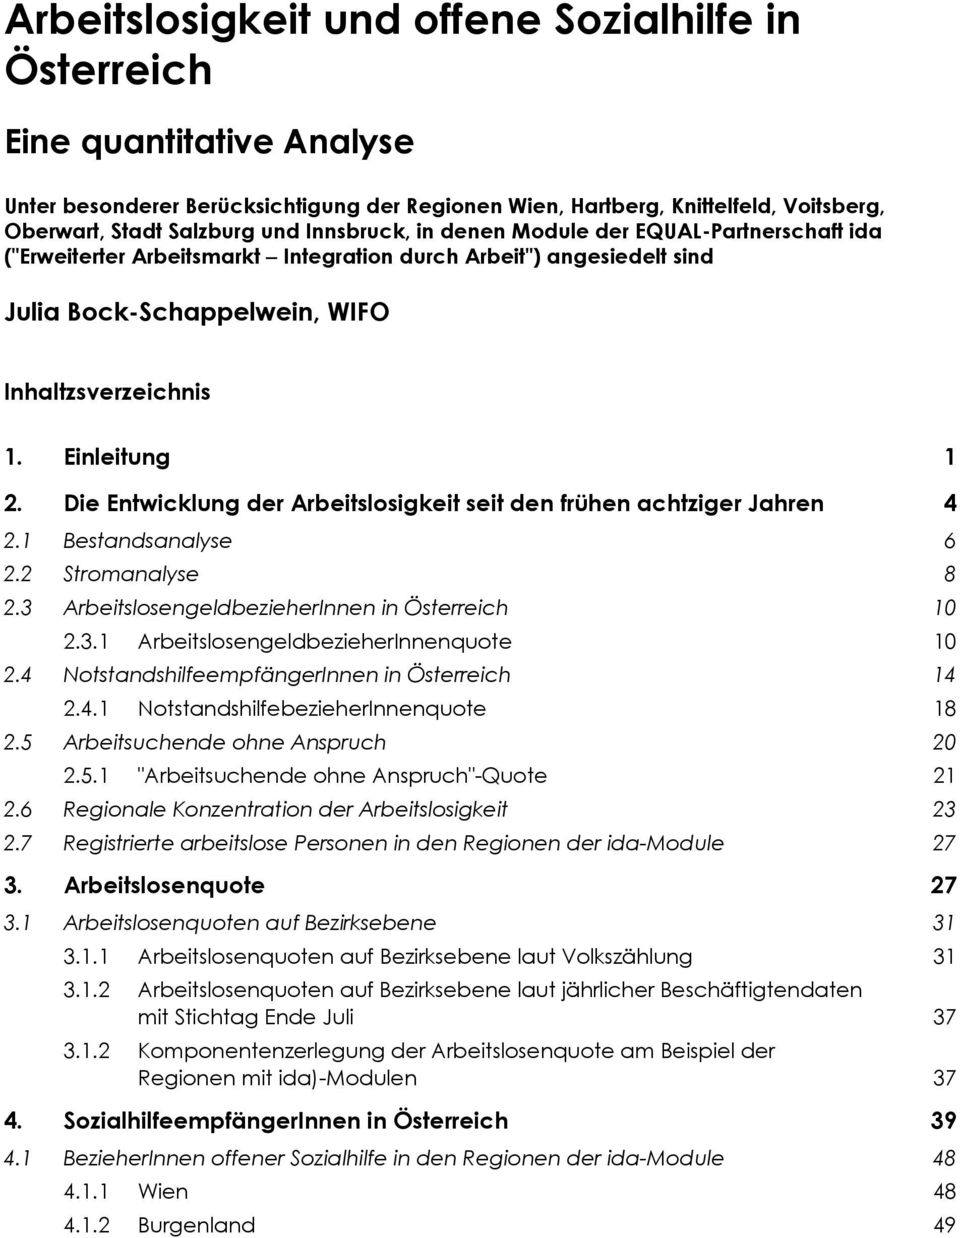 Die Entwicklung der Arbeitslosigkeit seit den frühen achtziger Jahren 4 2.1 Bestandsanalyse 6 2.2 Stromanalyse 8 2.3 ArbeitslosengeldbezieherInnen in Österreich 10 2.3.1 ArbeitslosengeldbezieherInnenquote 10 2.